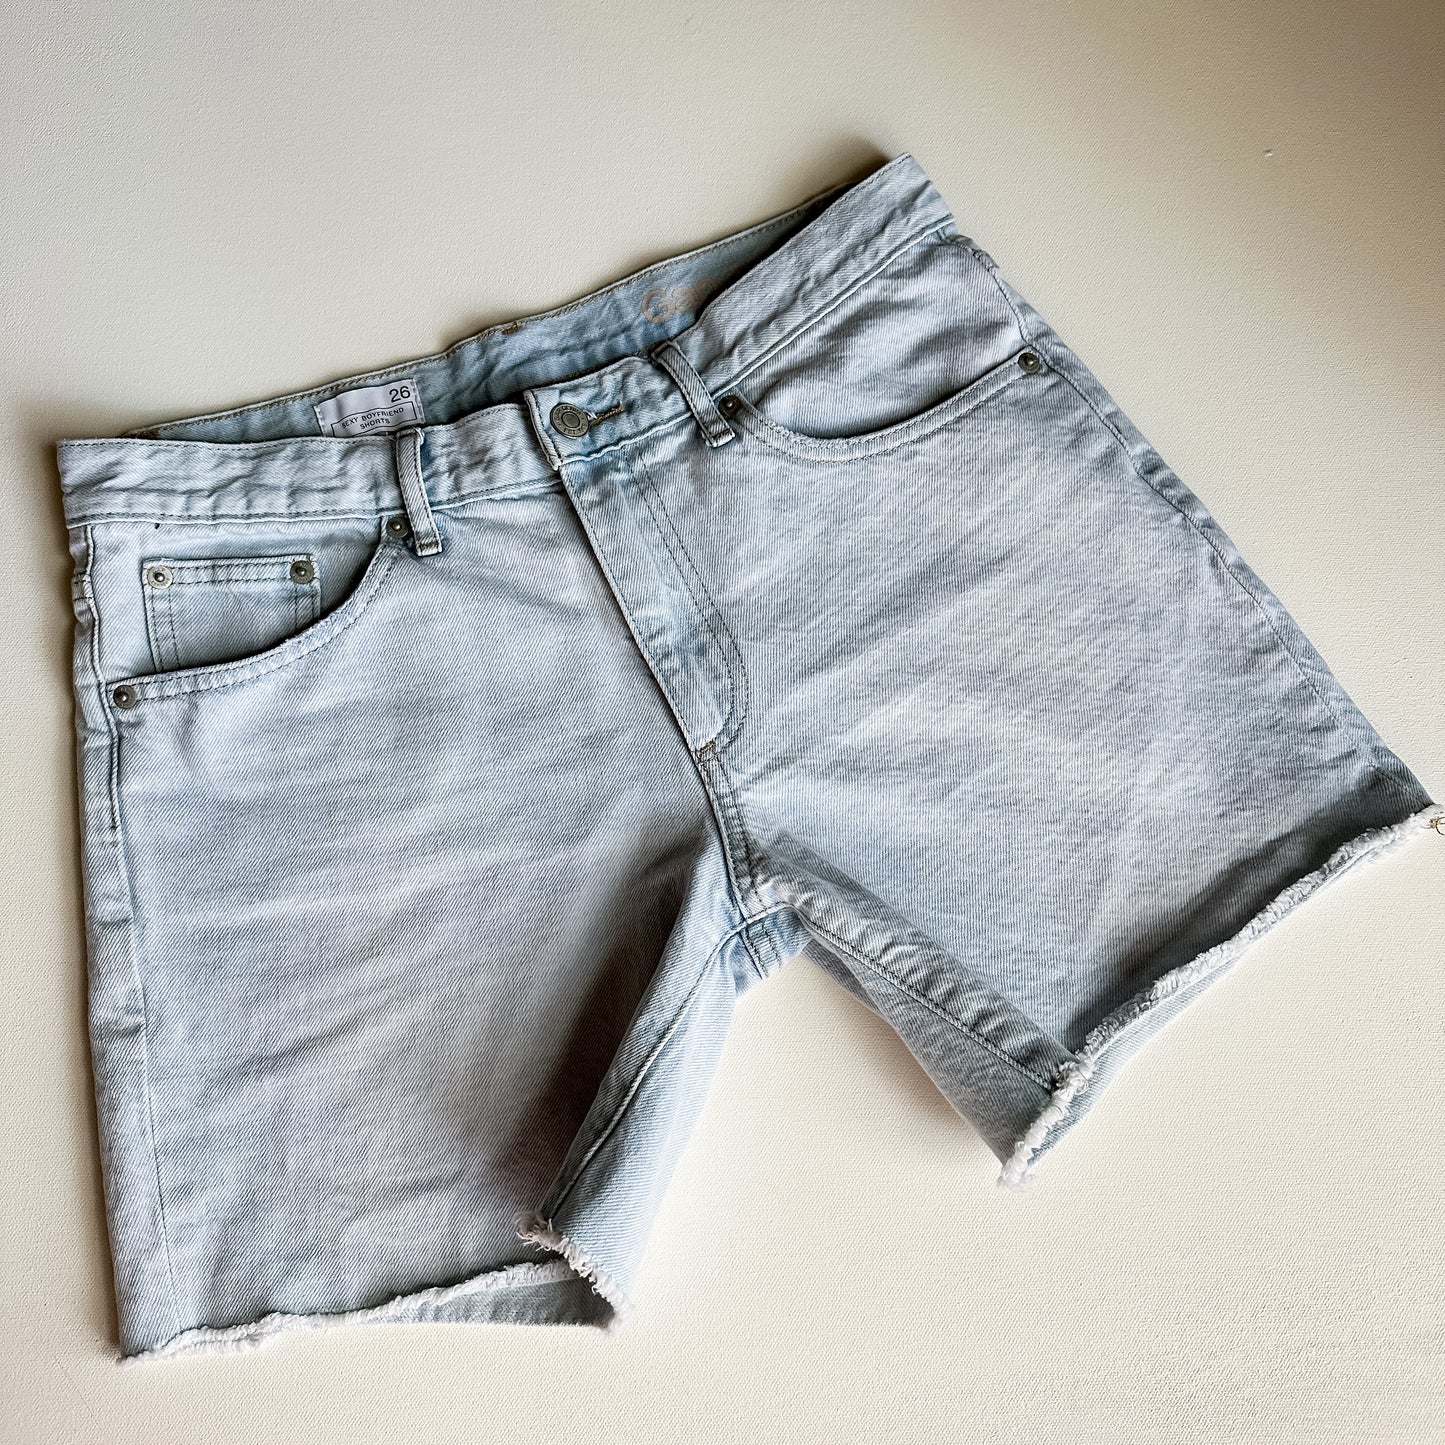 Gap “Sexy Boyfriend” Cutoff Mid Rise Light Wash Jean Shorts (size 26)